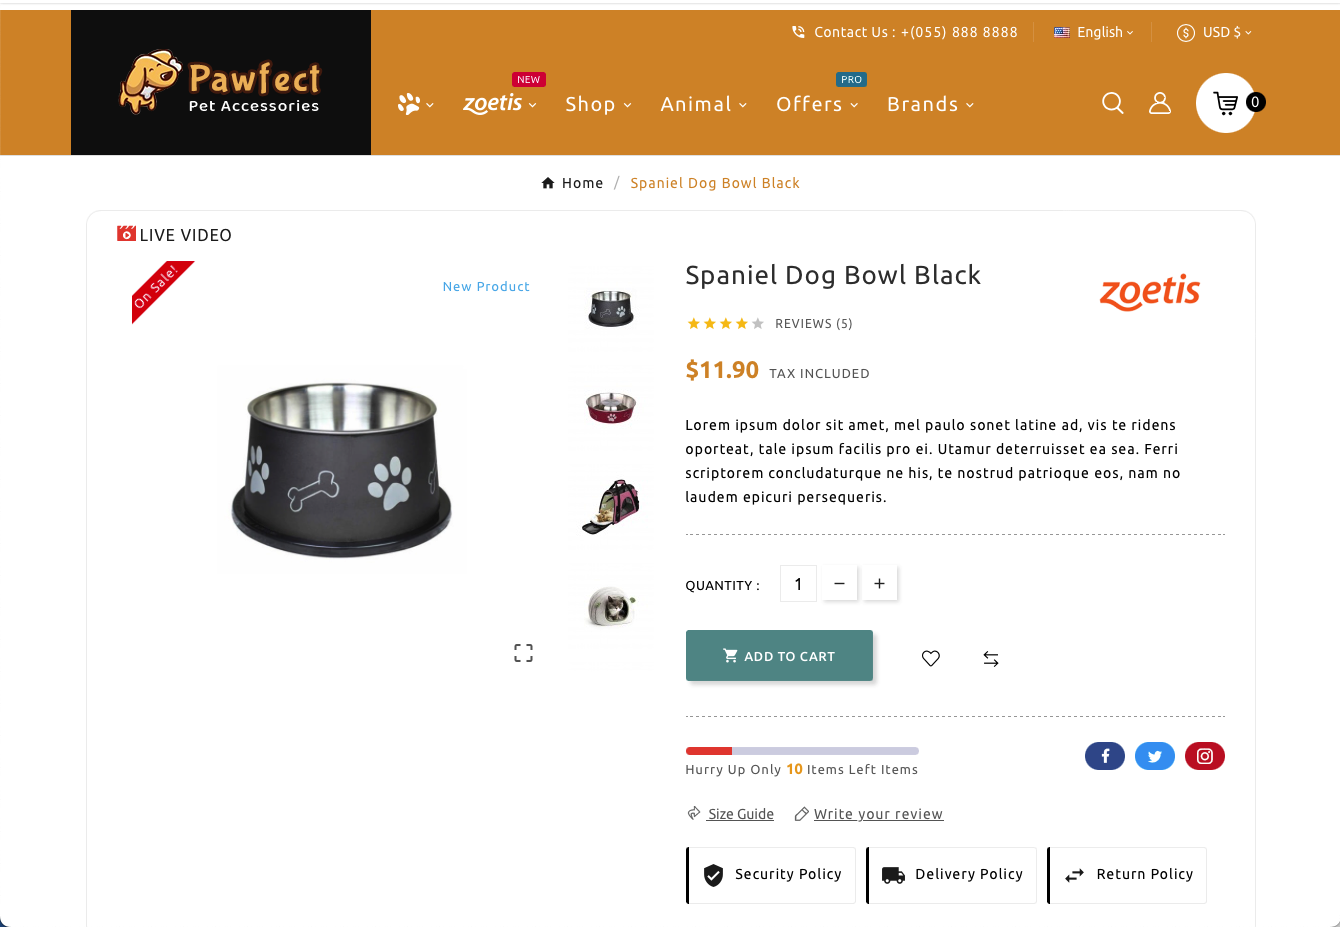 Pawfect - Šablona obchodu s příslušenstvím pro domácí zvířata: Kvalitní produkty pro vaše mazlíčky